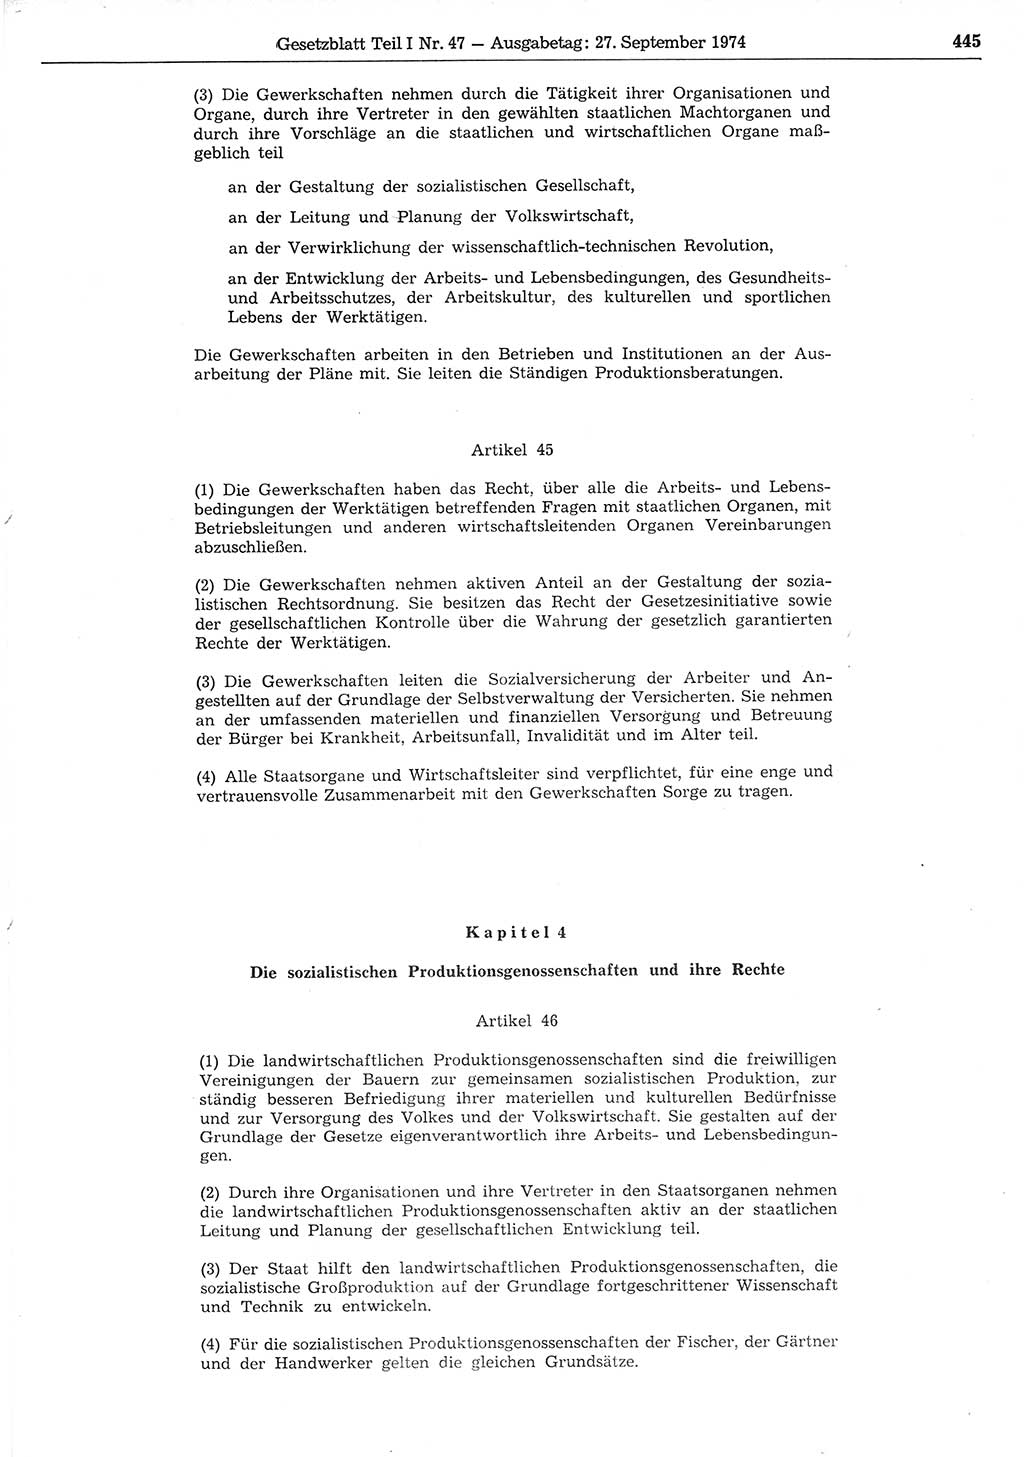 Gesetzblatt (GBl.) der Deutschen Demokratischen Republik (DDR) Teil Ⅰ 1974, Seite 445 (GBl. DDR Ⅰ 1974, S. 445)